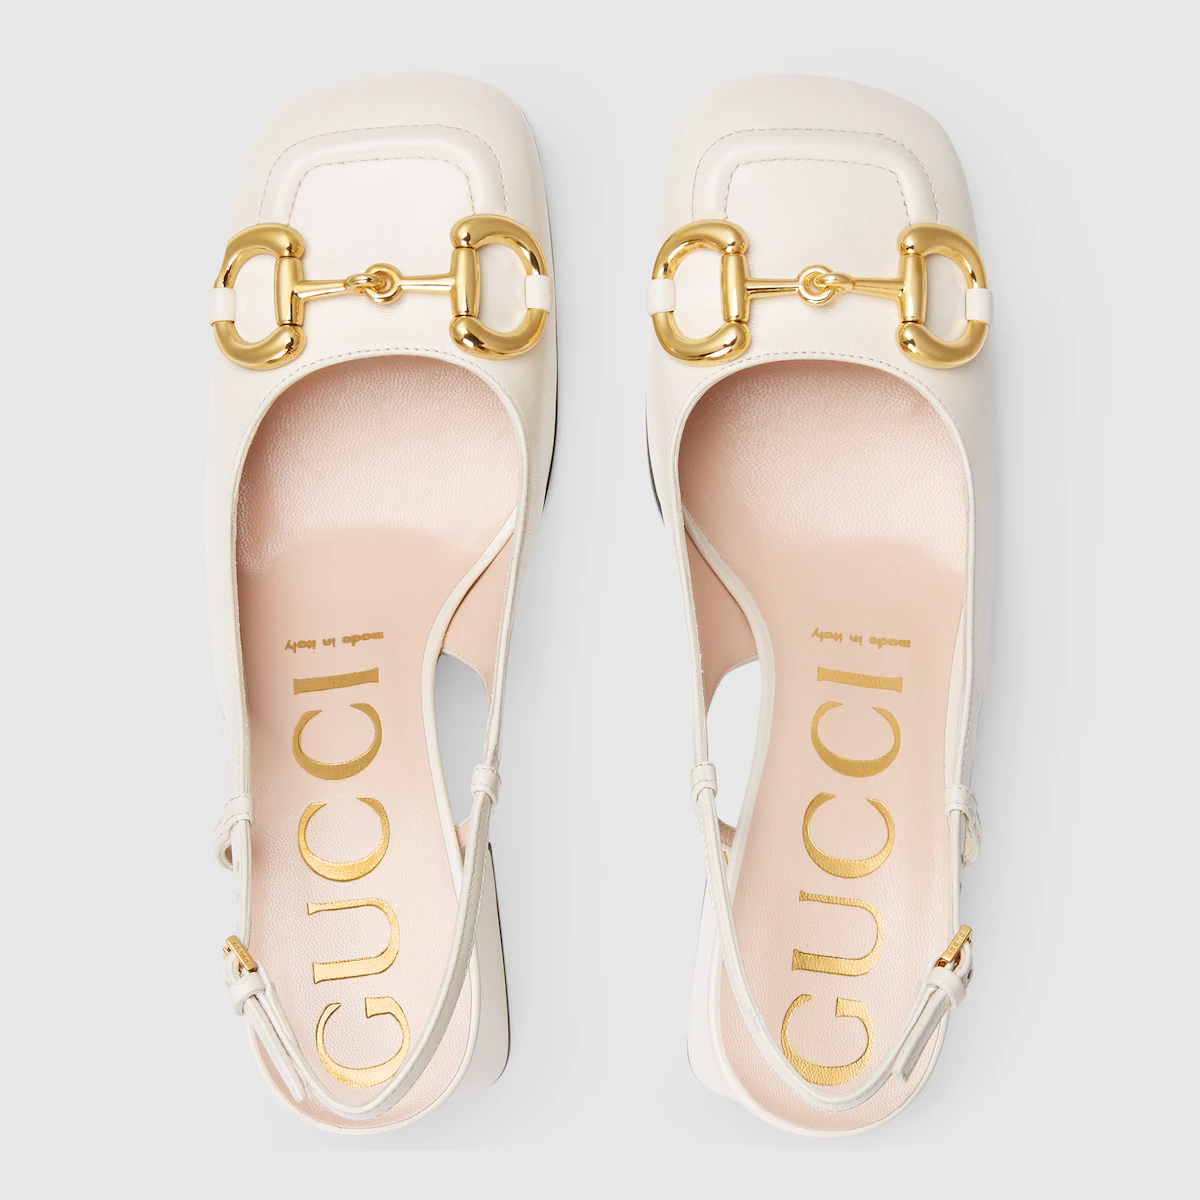 Vista superior de zapatos de novia Gucci modelo Salon, mostrando la palabra Gucci en la plantilla